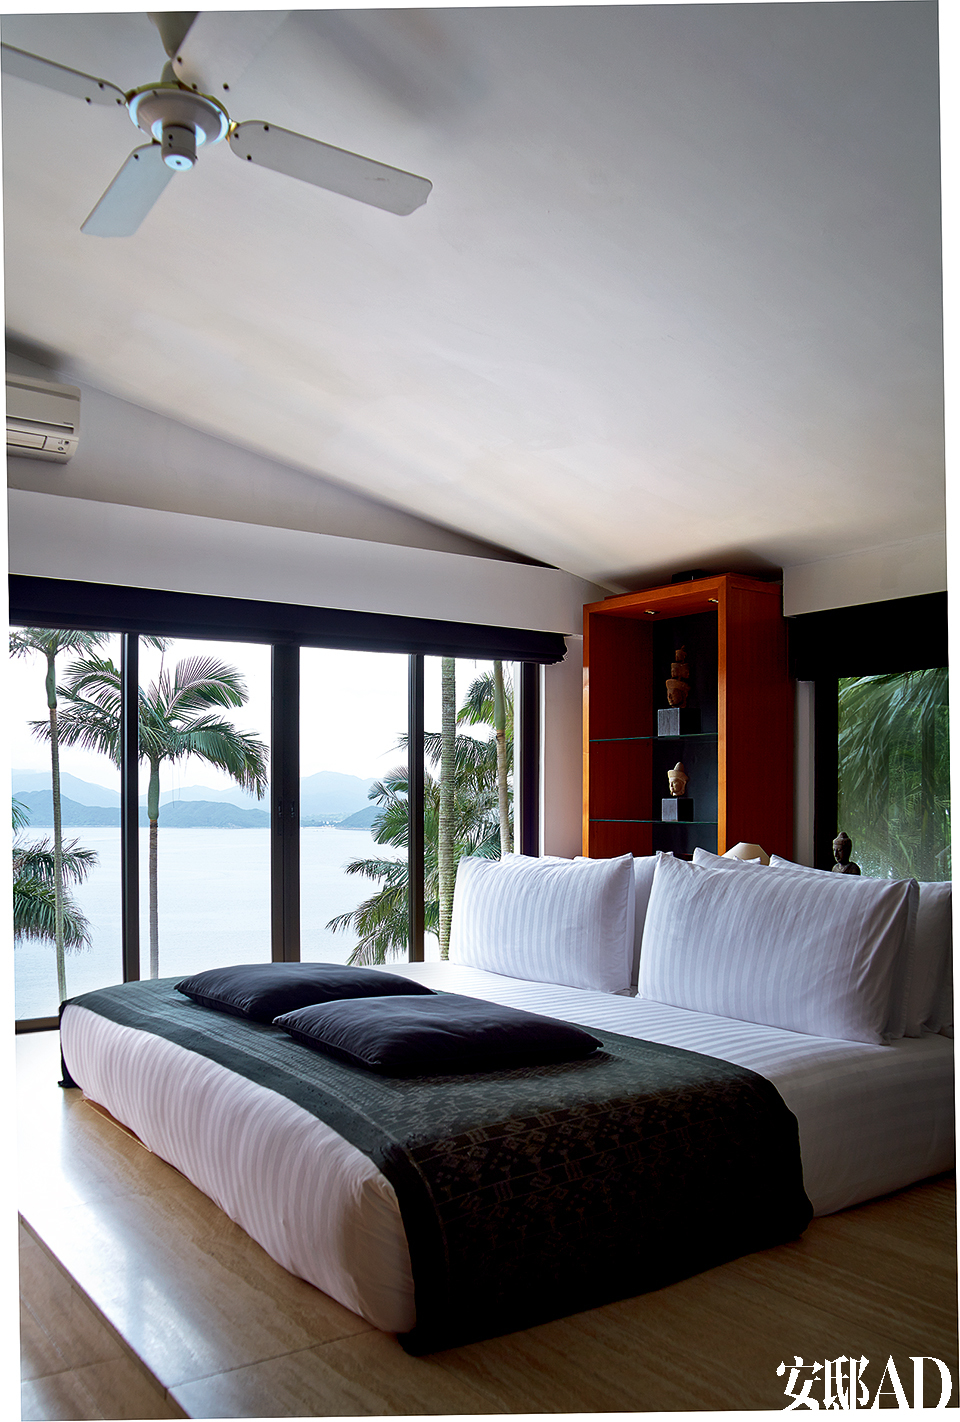 主卧拥有全部卧室中的最佳视角，窗外便是迷人的南海风光。